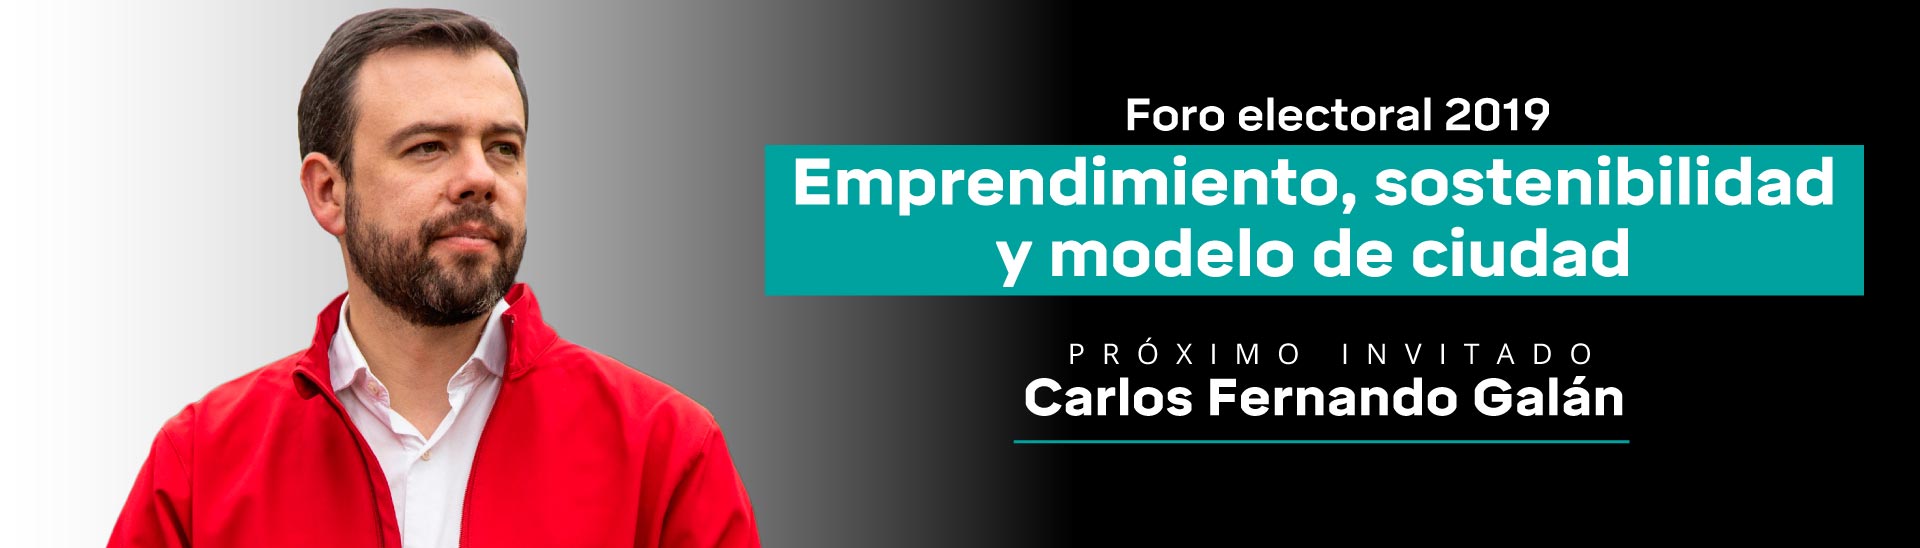 Candidato del movimiento Bogotá para la gente, Carlos Fernando Galán